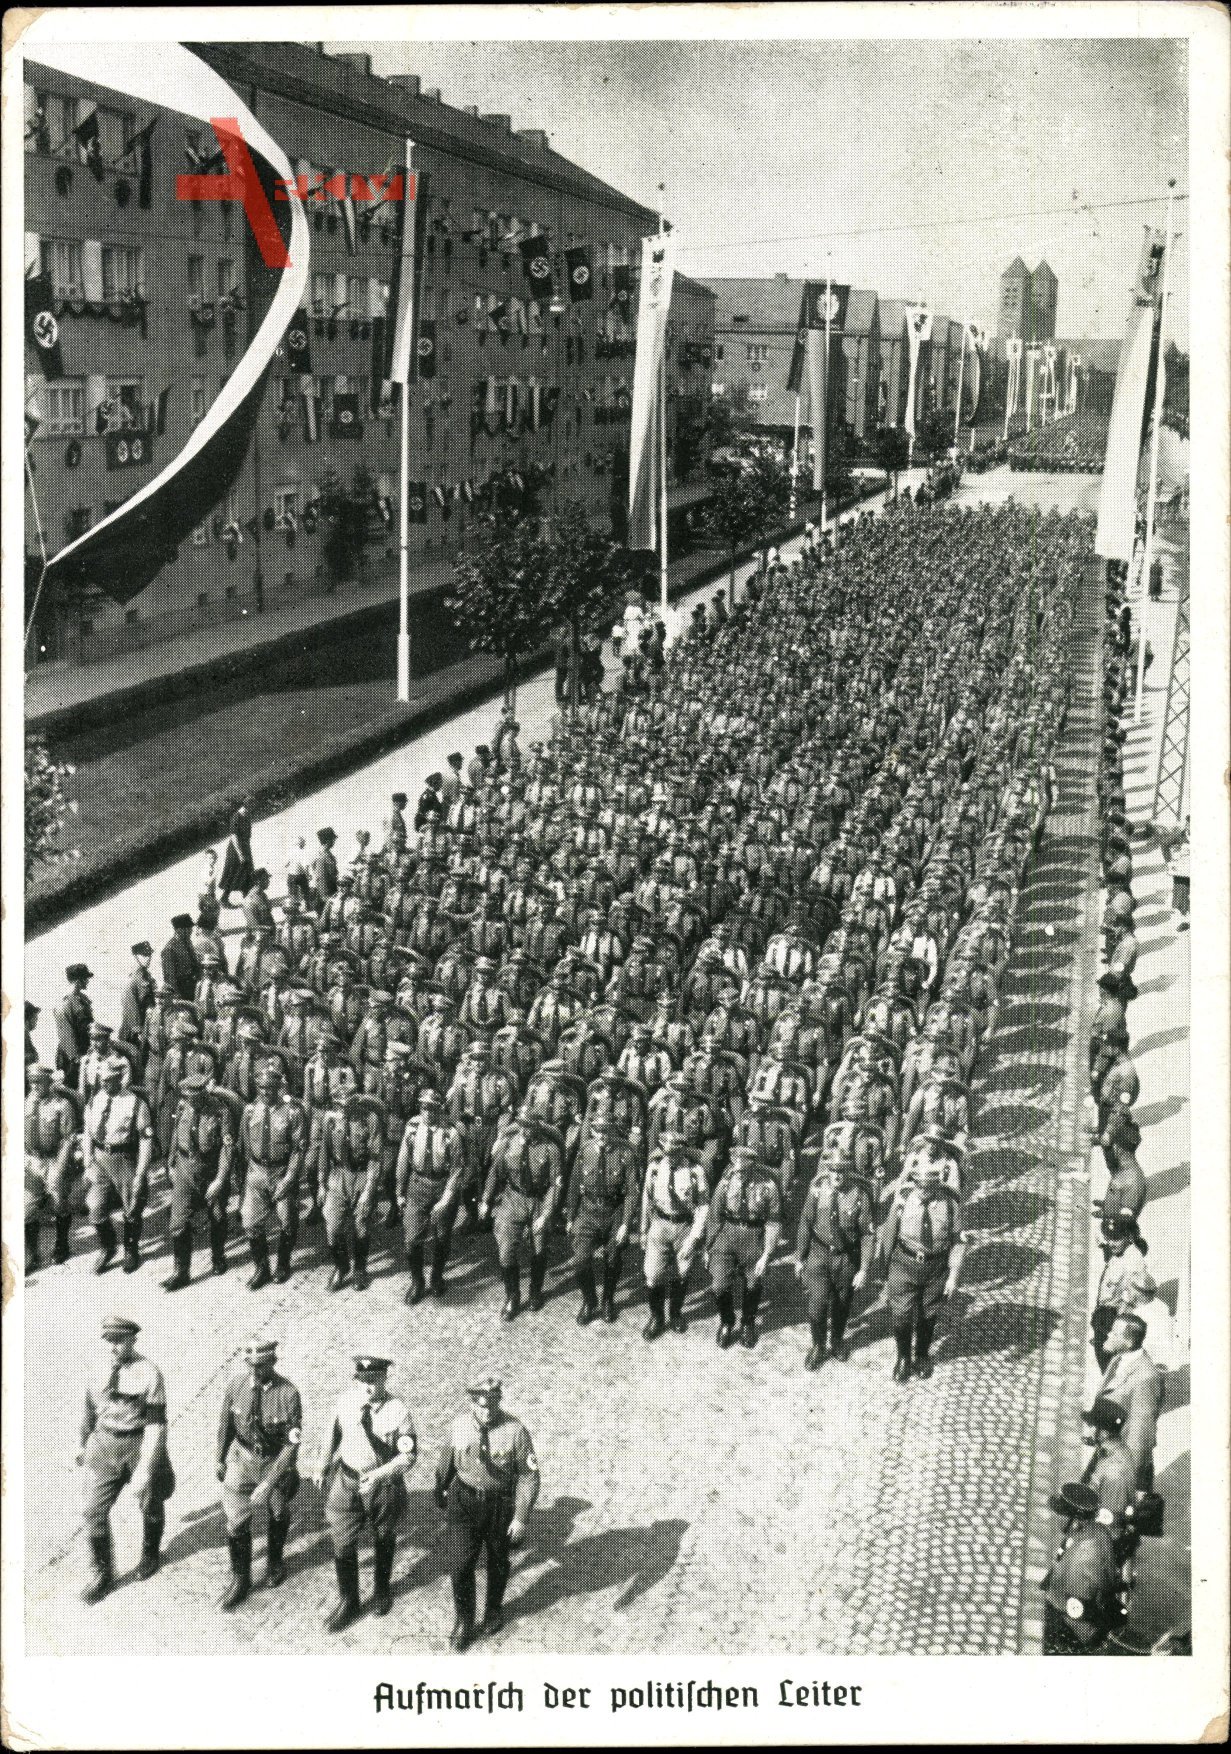 Nürnberg in Mittelfranken Bayern, Reichsparteitag 1935, Aufmarsch der politischen Leiter